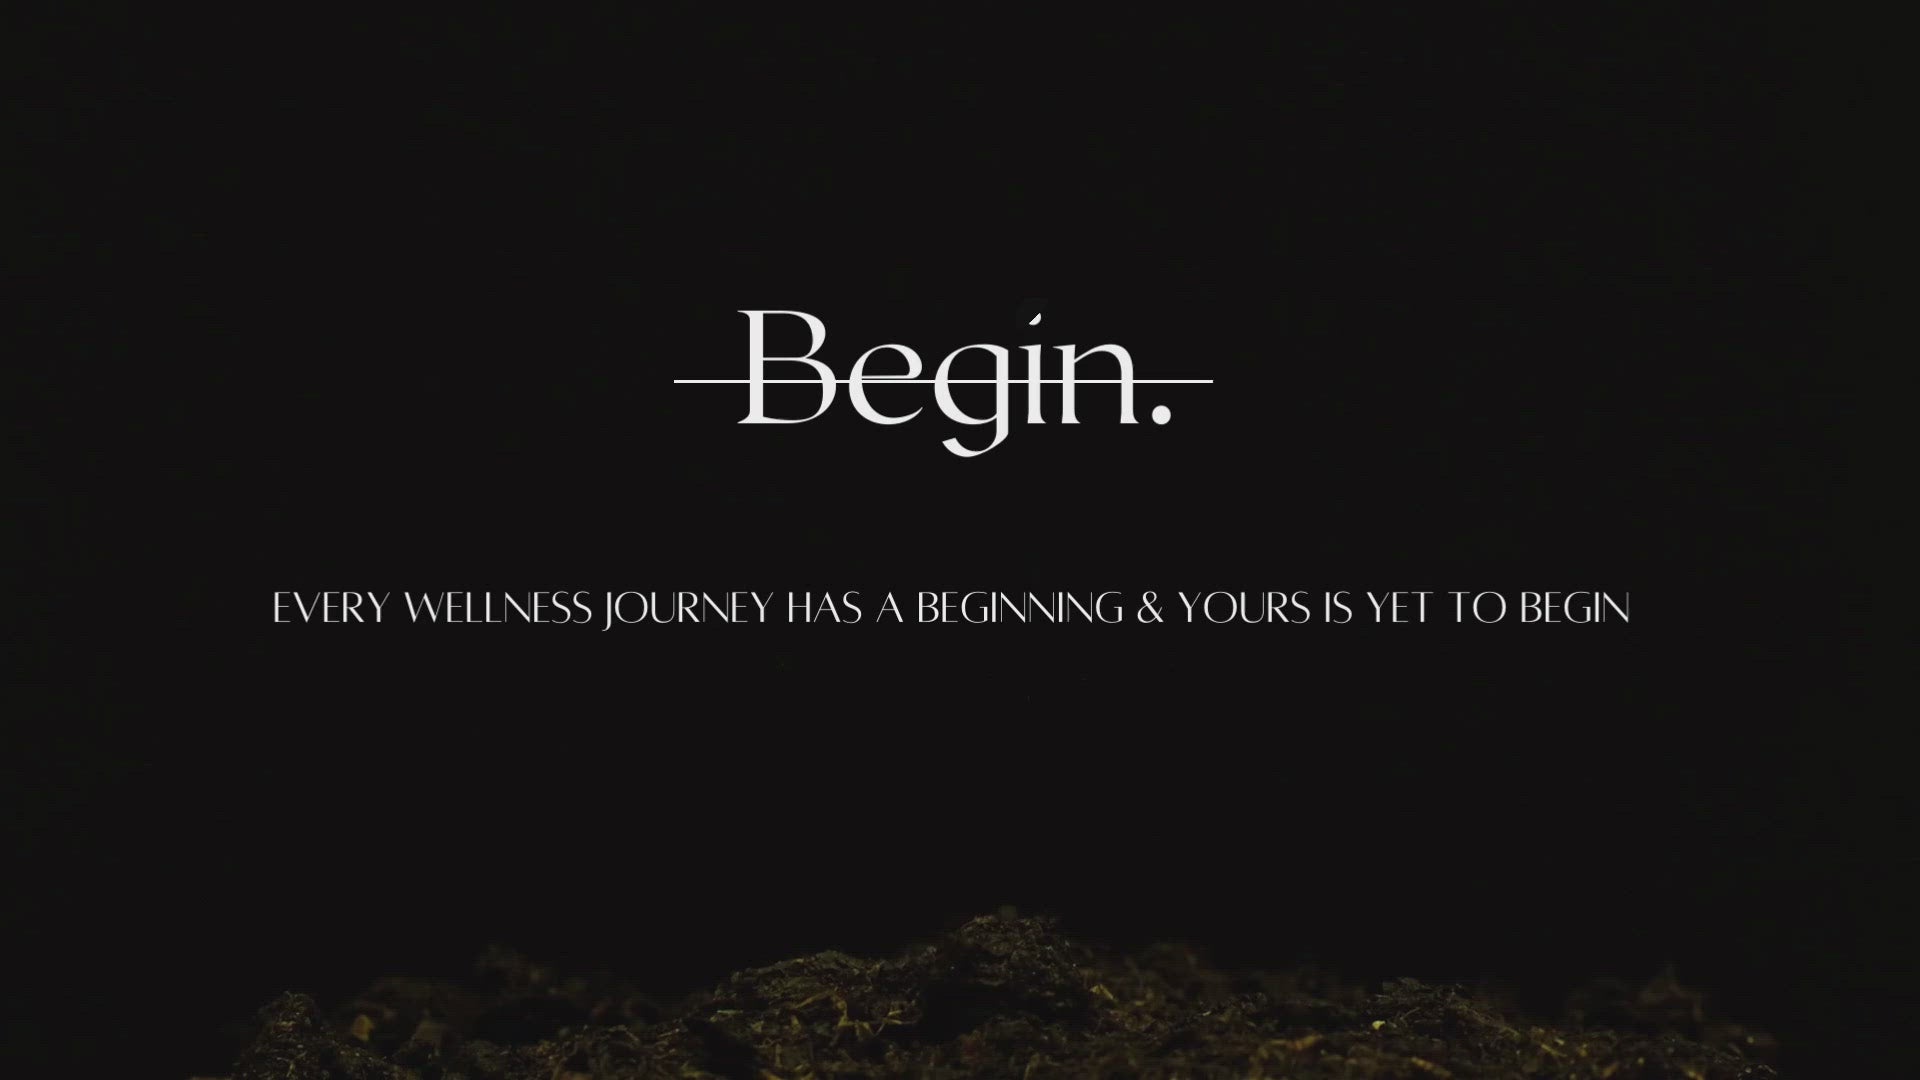 Begin - Begin Your Journey (4 items)